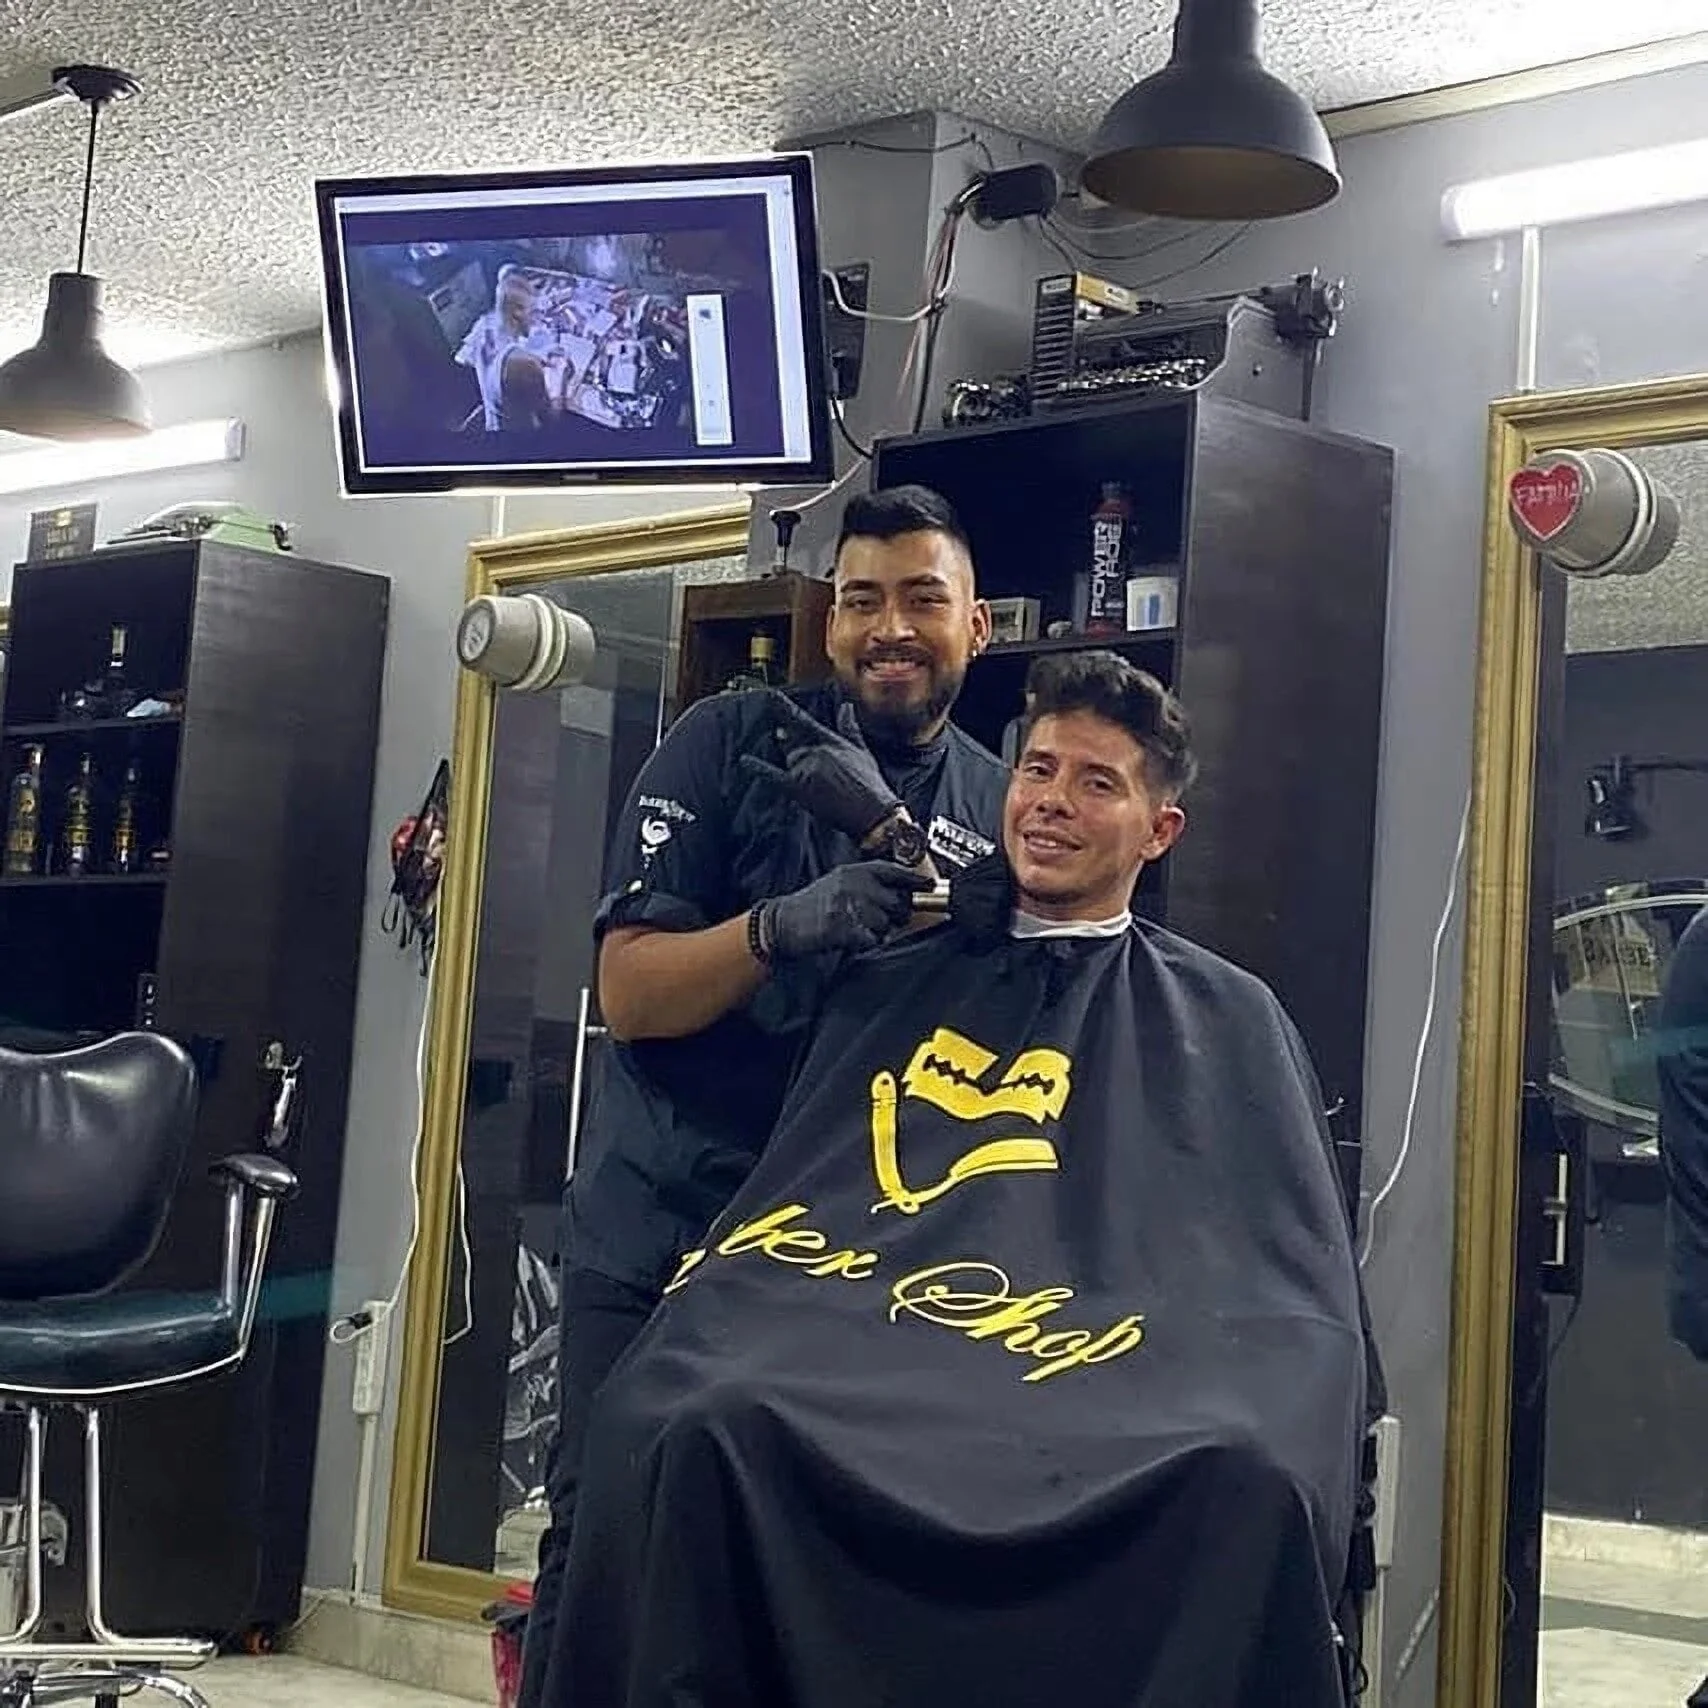 Barbería-yeico-barber-shop-7639